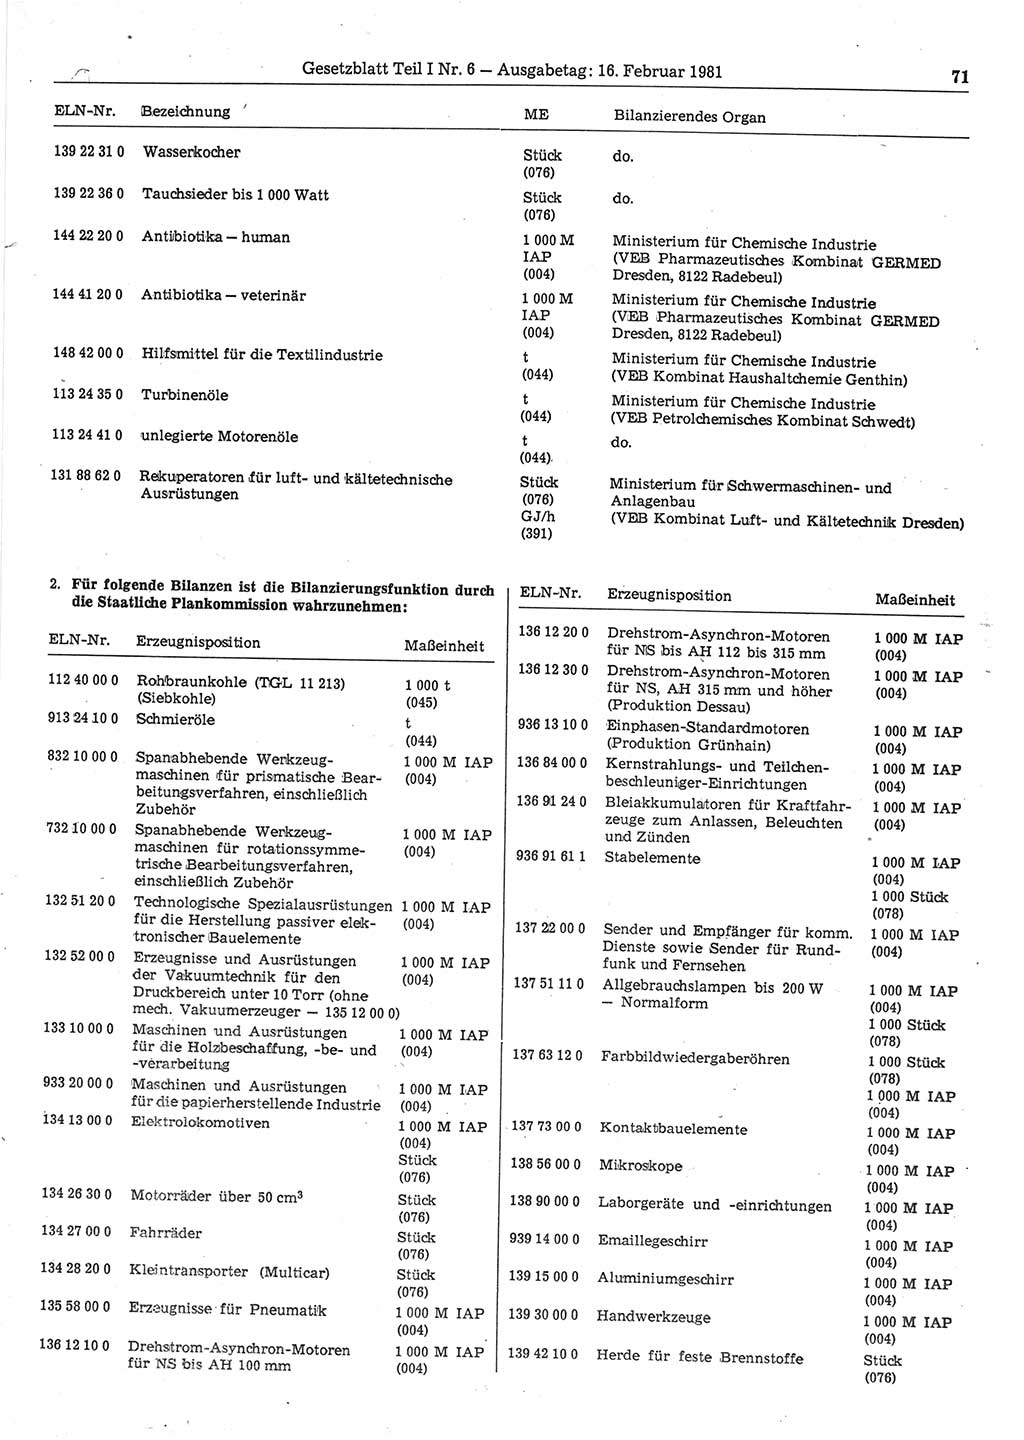 Gesetzblatt (GBl.) der Deutschen Demokratischen Republik (DDR) Teil Ⅰ 1981, Seite 71 (GBl. DDR Ⅰ 1981, S. 71)